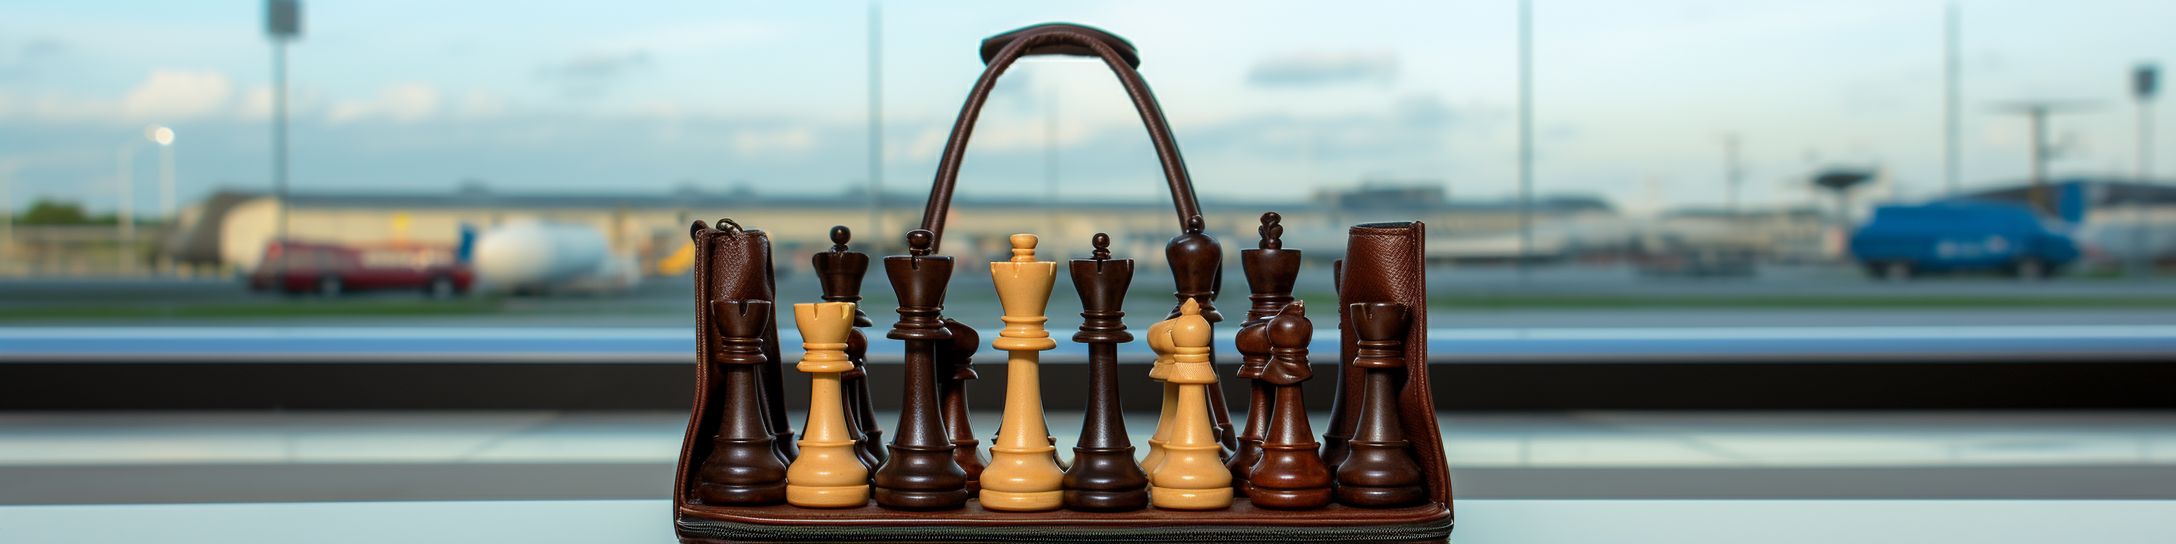 L'importance de choisir la bonne taille pour un jeu d'échecs de voyage.